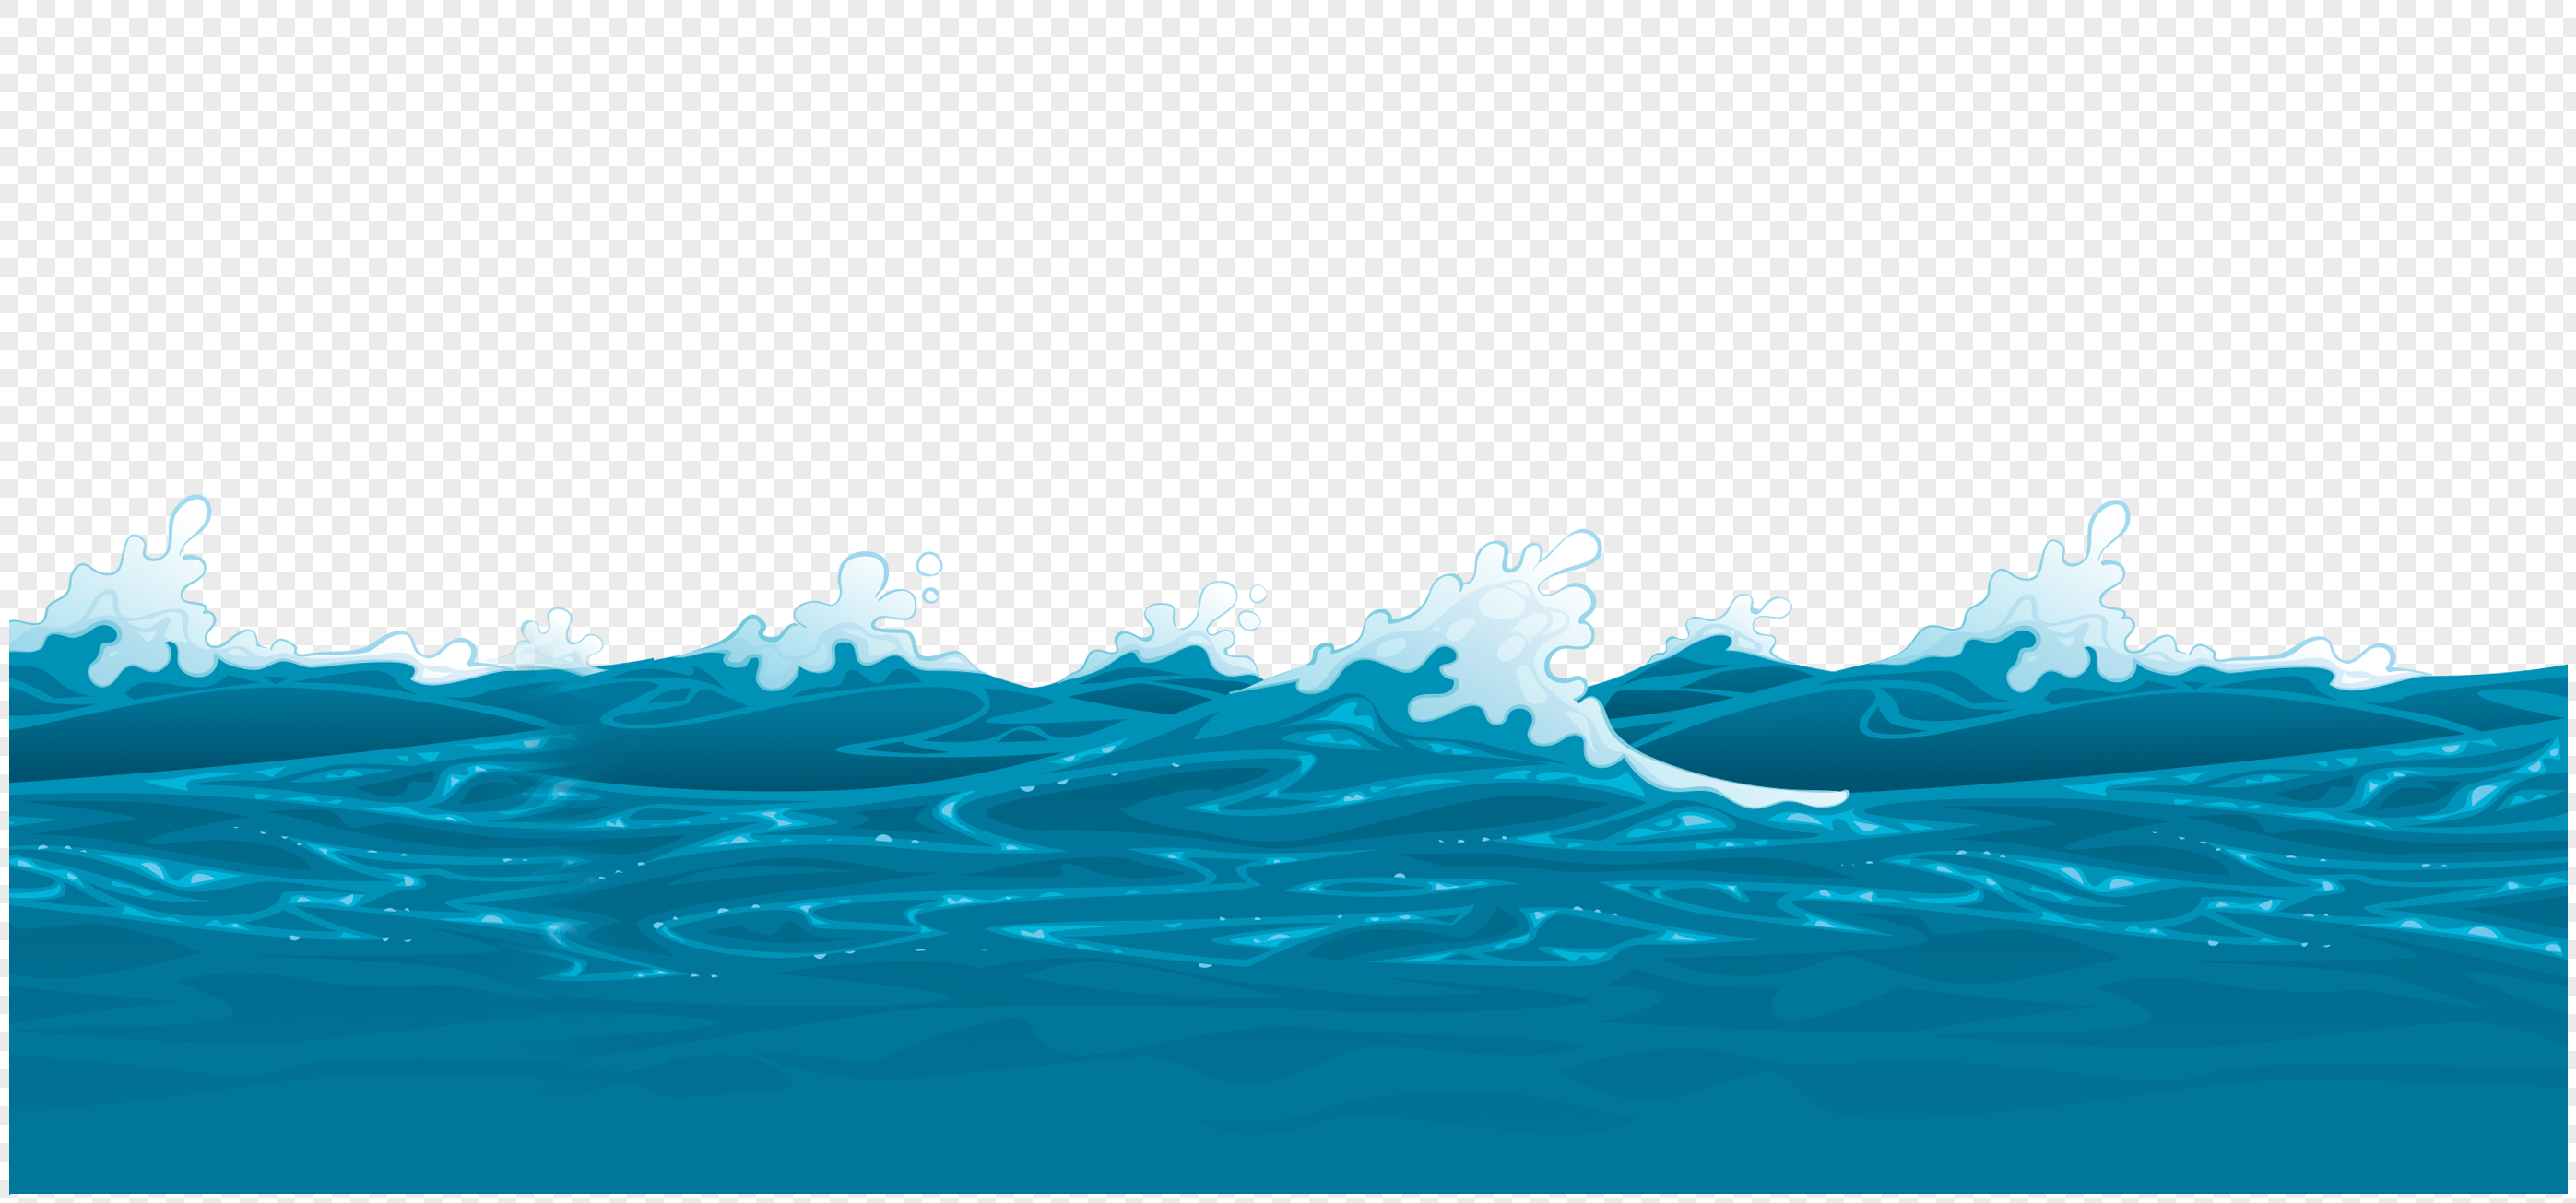 ocean wave transparent background